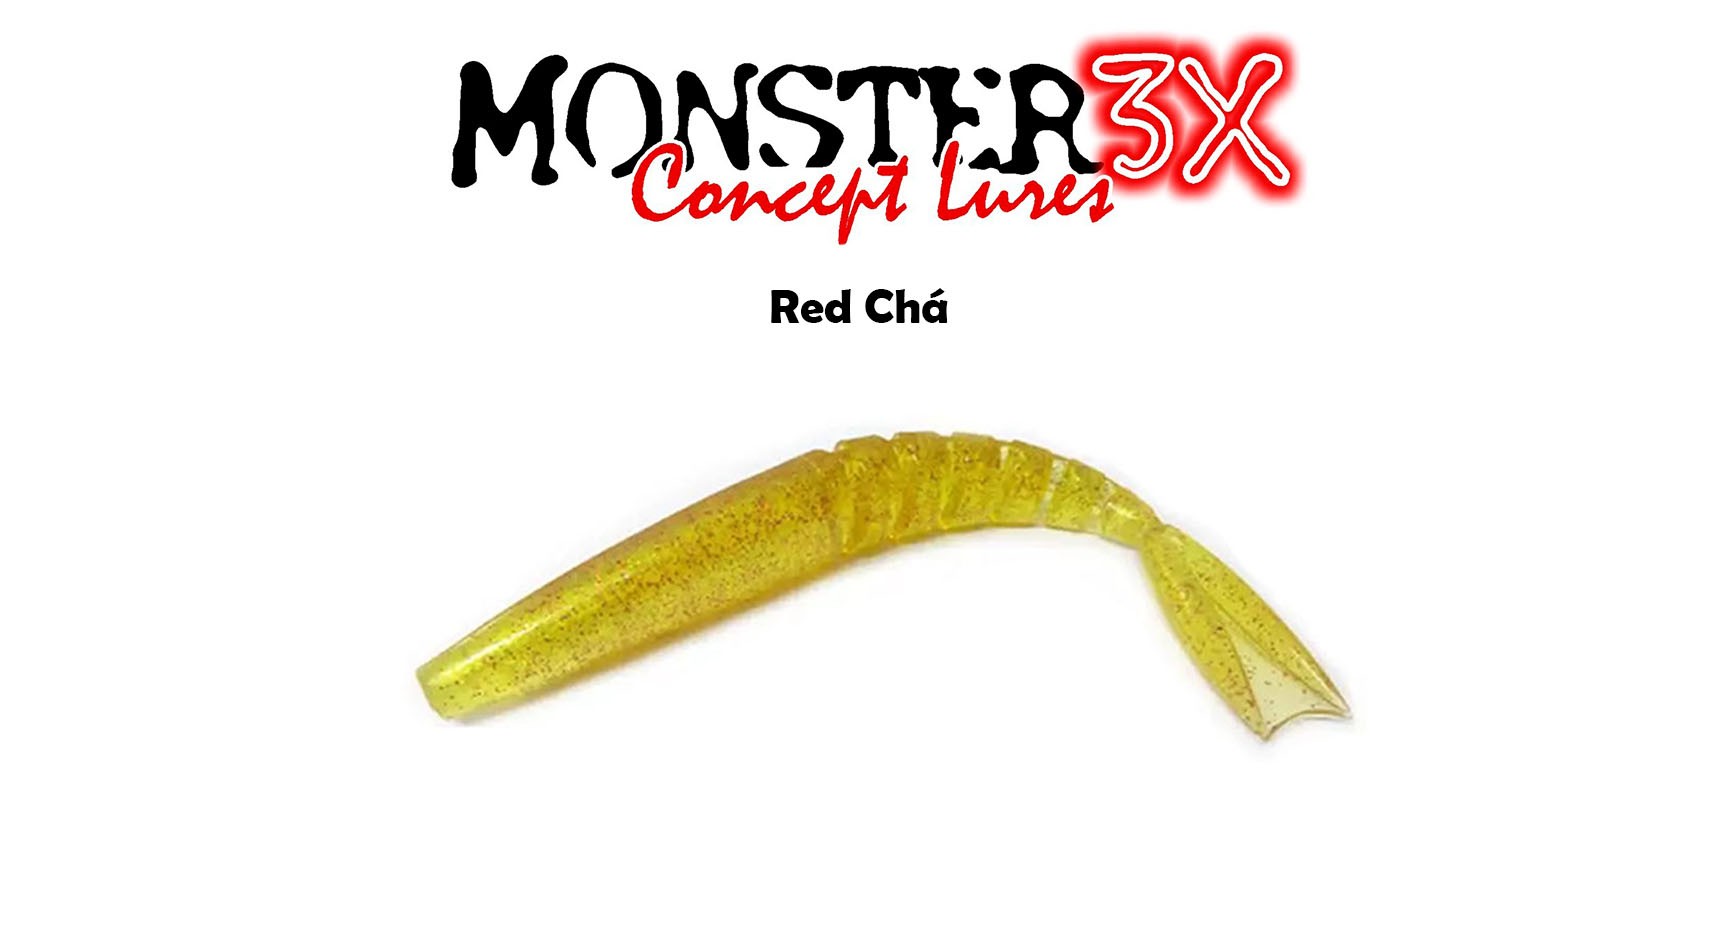 Isca Artificial Soft Monster 3X X-Swim (22 cm) 2 Unidades - Várias Cores